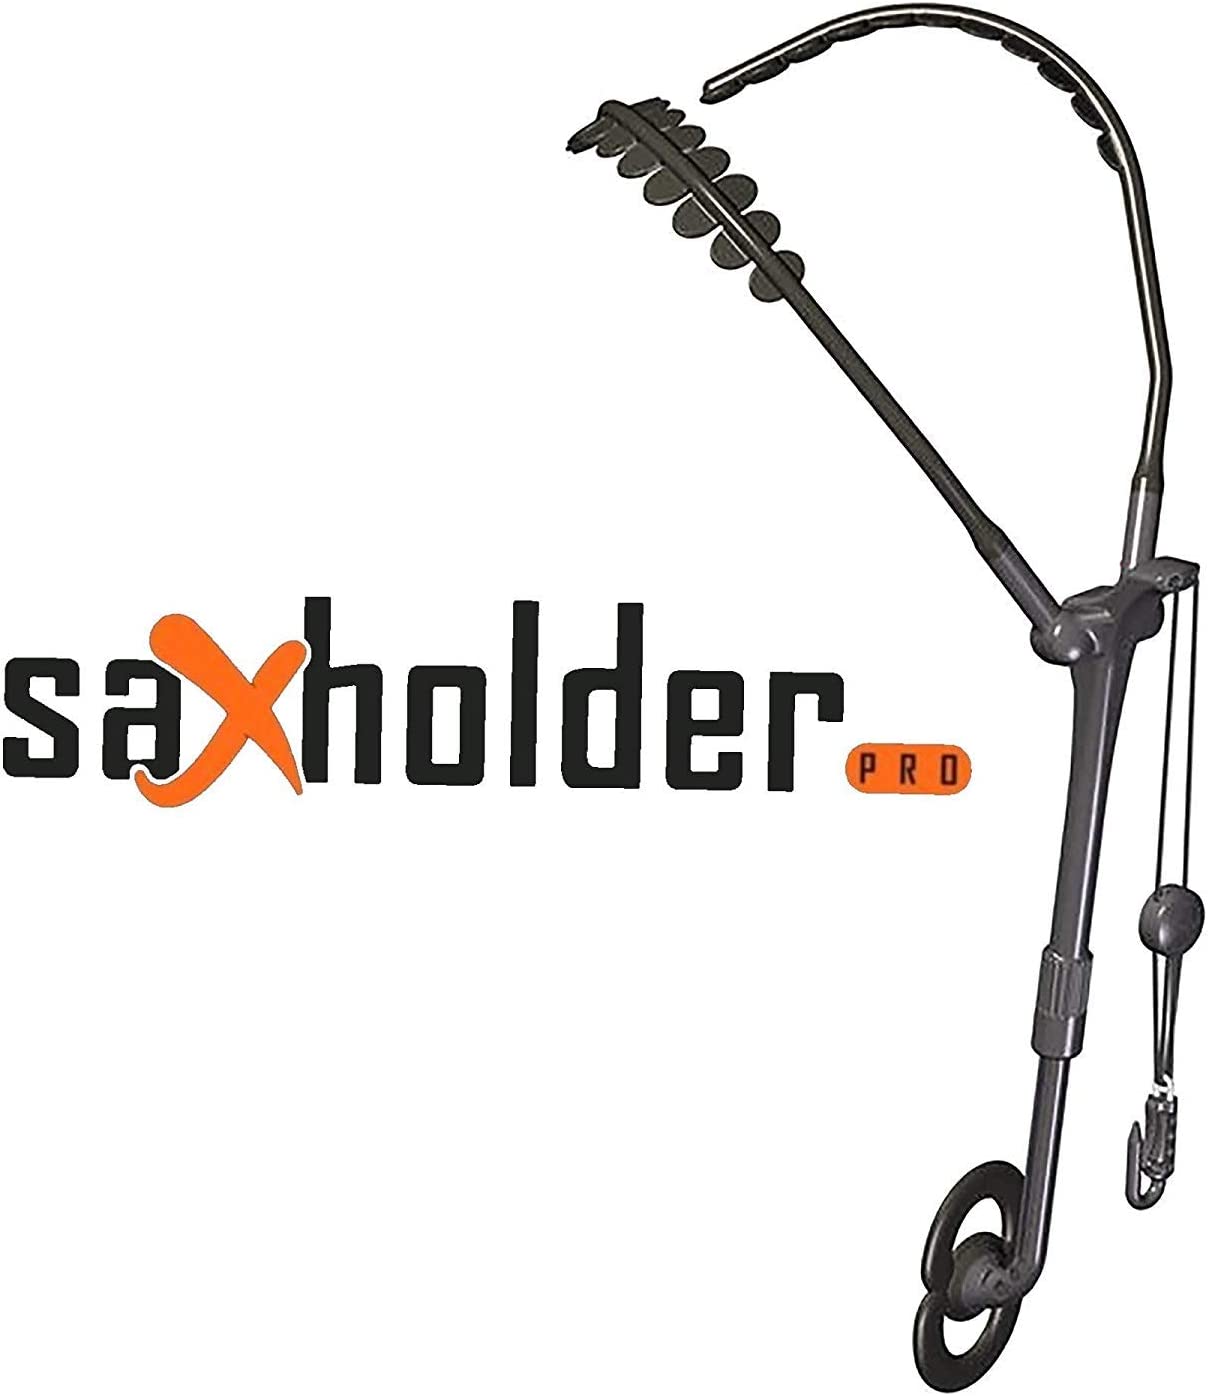 Saxholder Pro